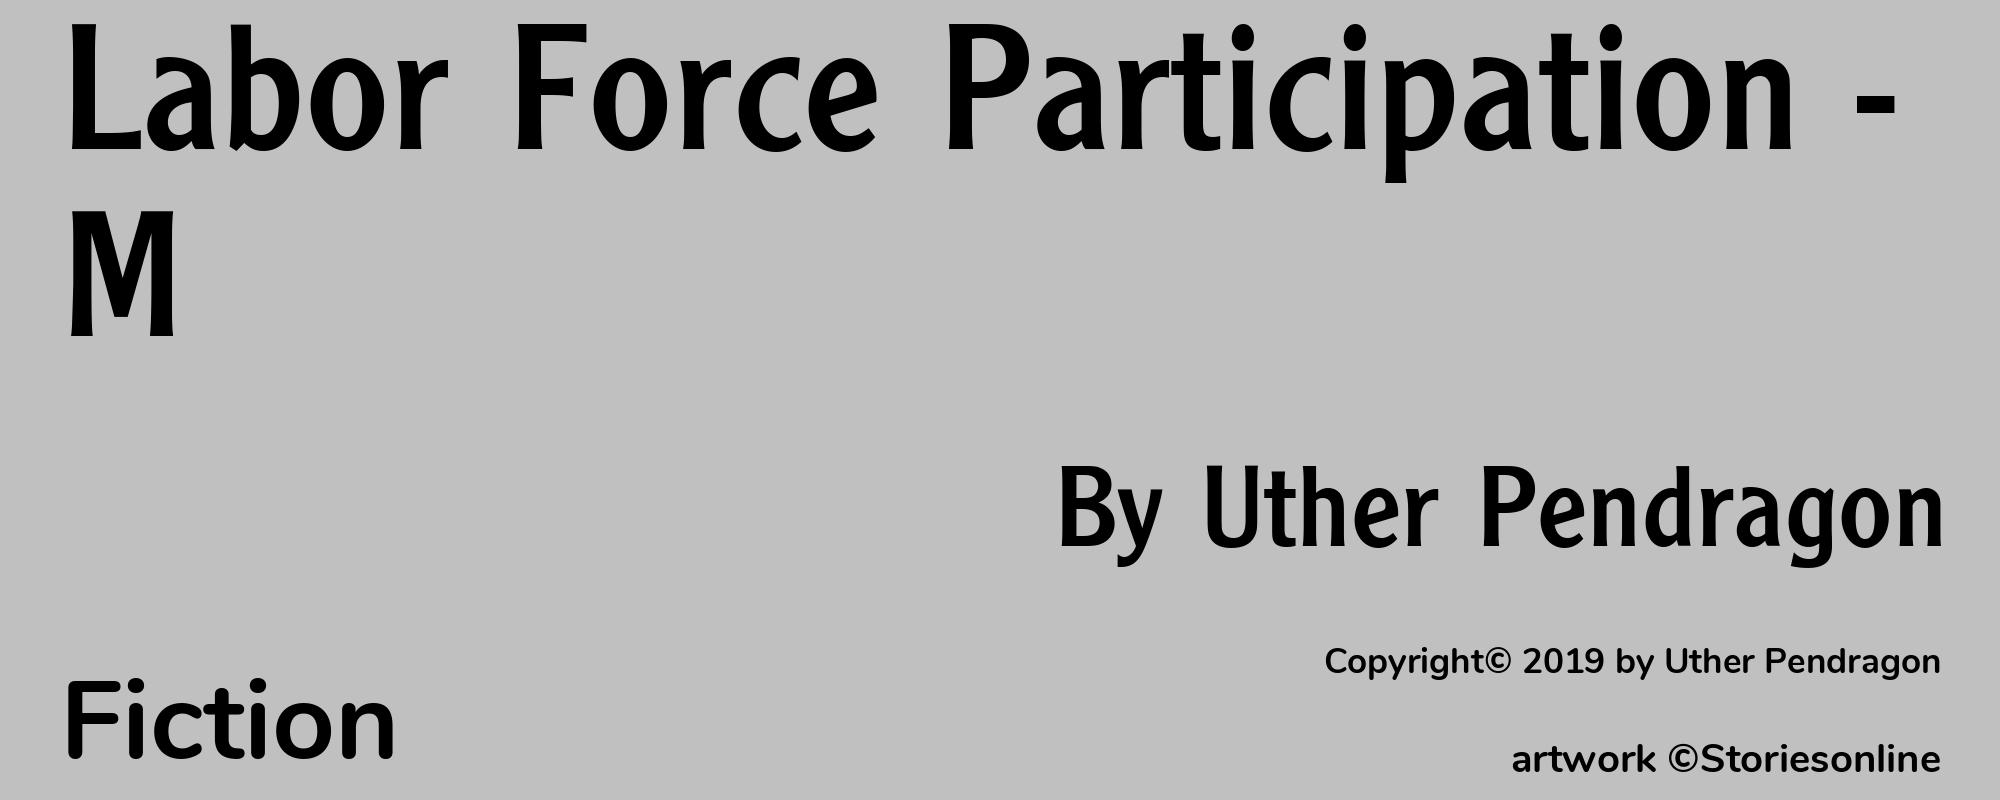 Labor Force Participation - M - Cover